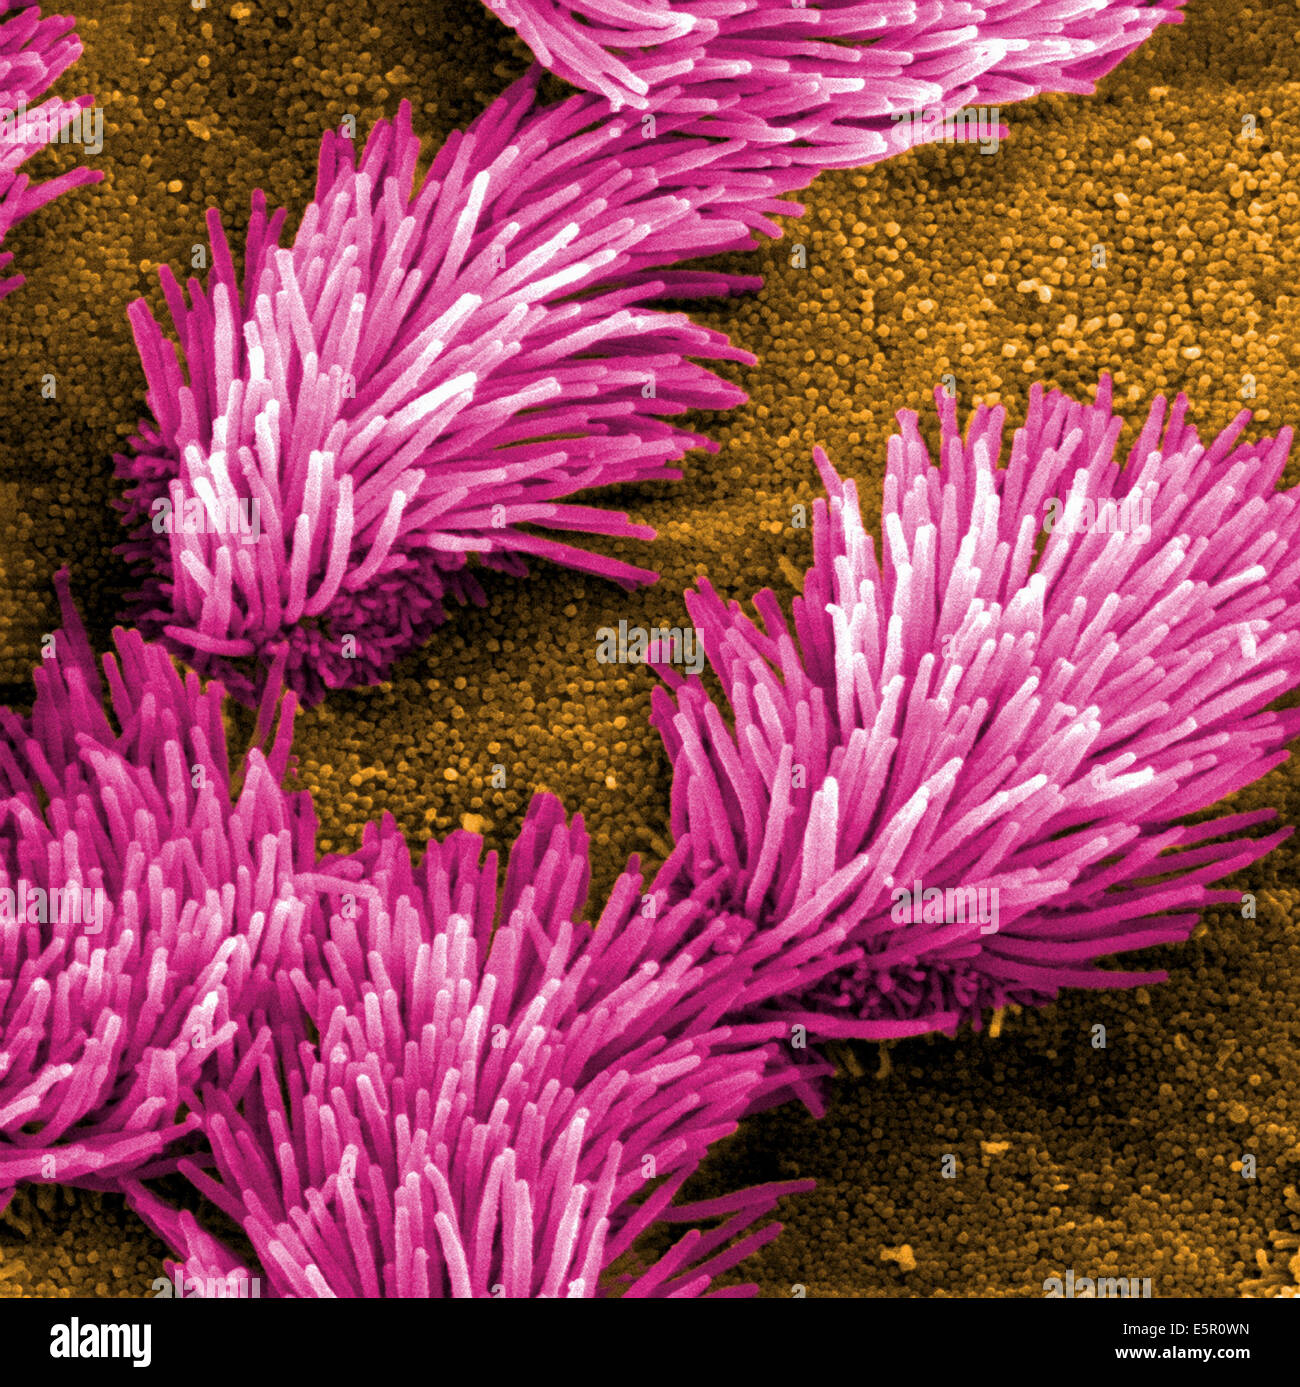 Análisis micrografía de electrones (SEM) de la tráquea de epitelio pulmonar que se compone de células ciliadas y no las células ciliadas. Foto de stock